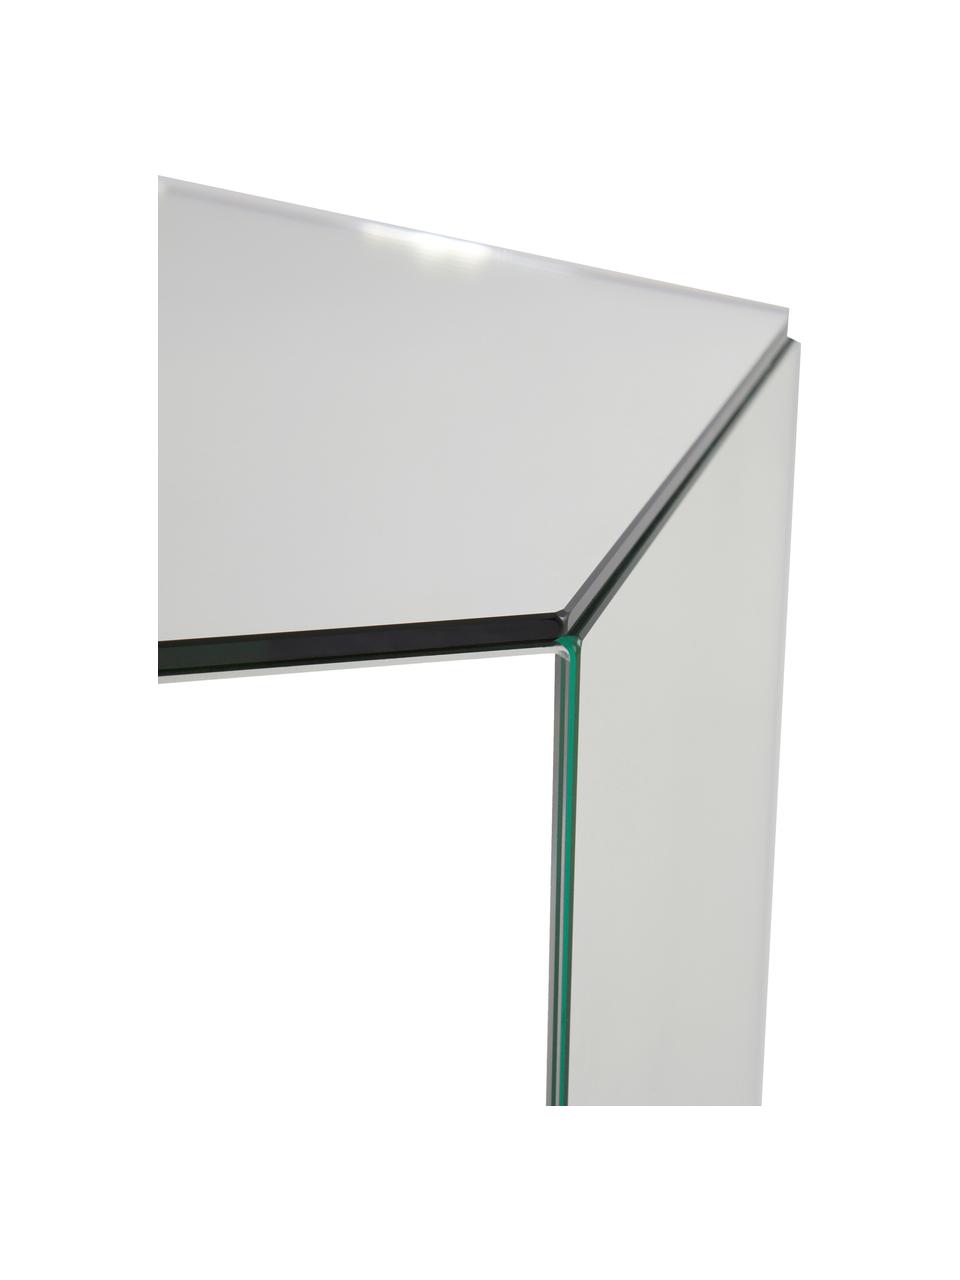 Stolik pomocniczy ze szkła z efektem lustra Scrape, Płyta pilśniowa średniej gęstości (MDF), szkło lustrzane, Szkło lustrzane, S 40 x W 60 cm